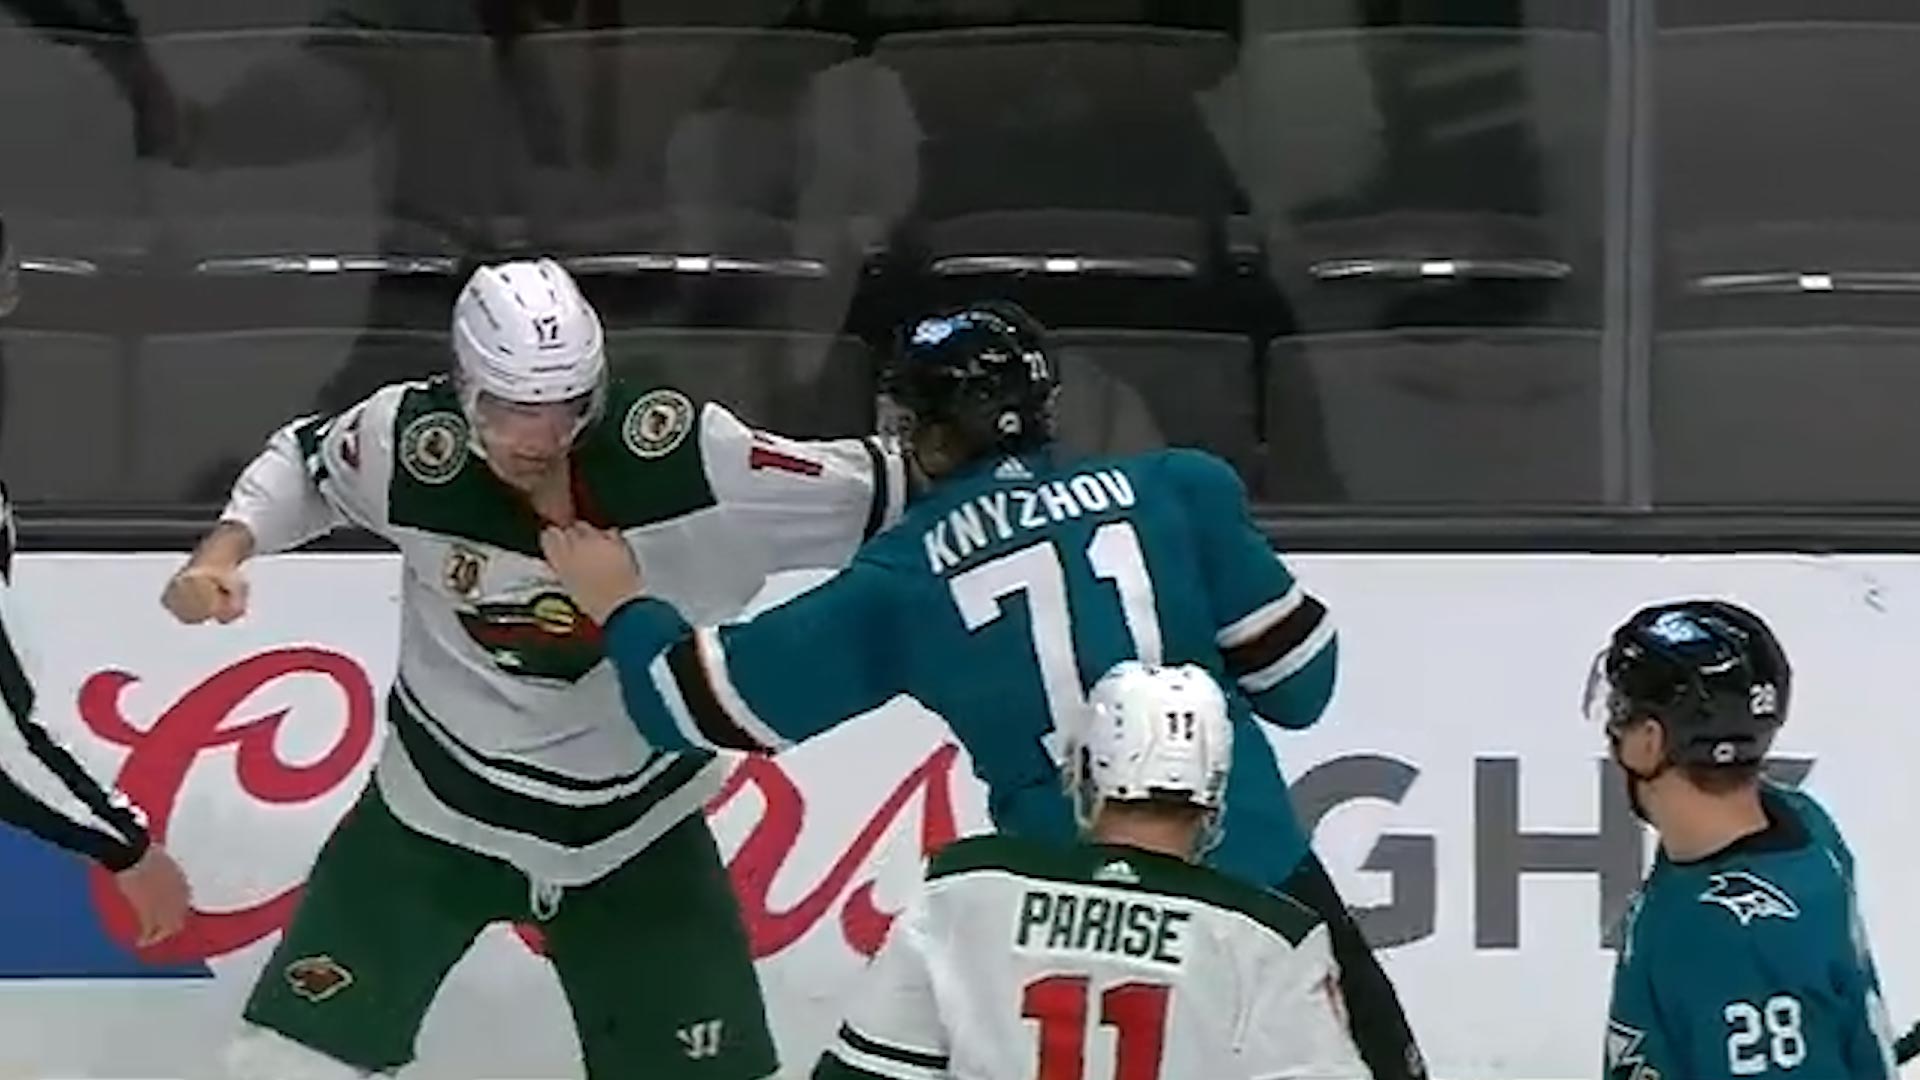 Pelea salvaje en la NHL: uno de los jugadores pidió a los árbitros que la detengan al ver el rostro ensangrentado de su rival